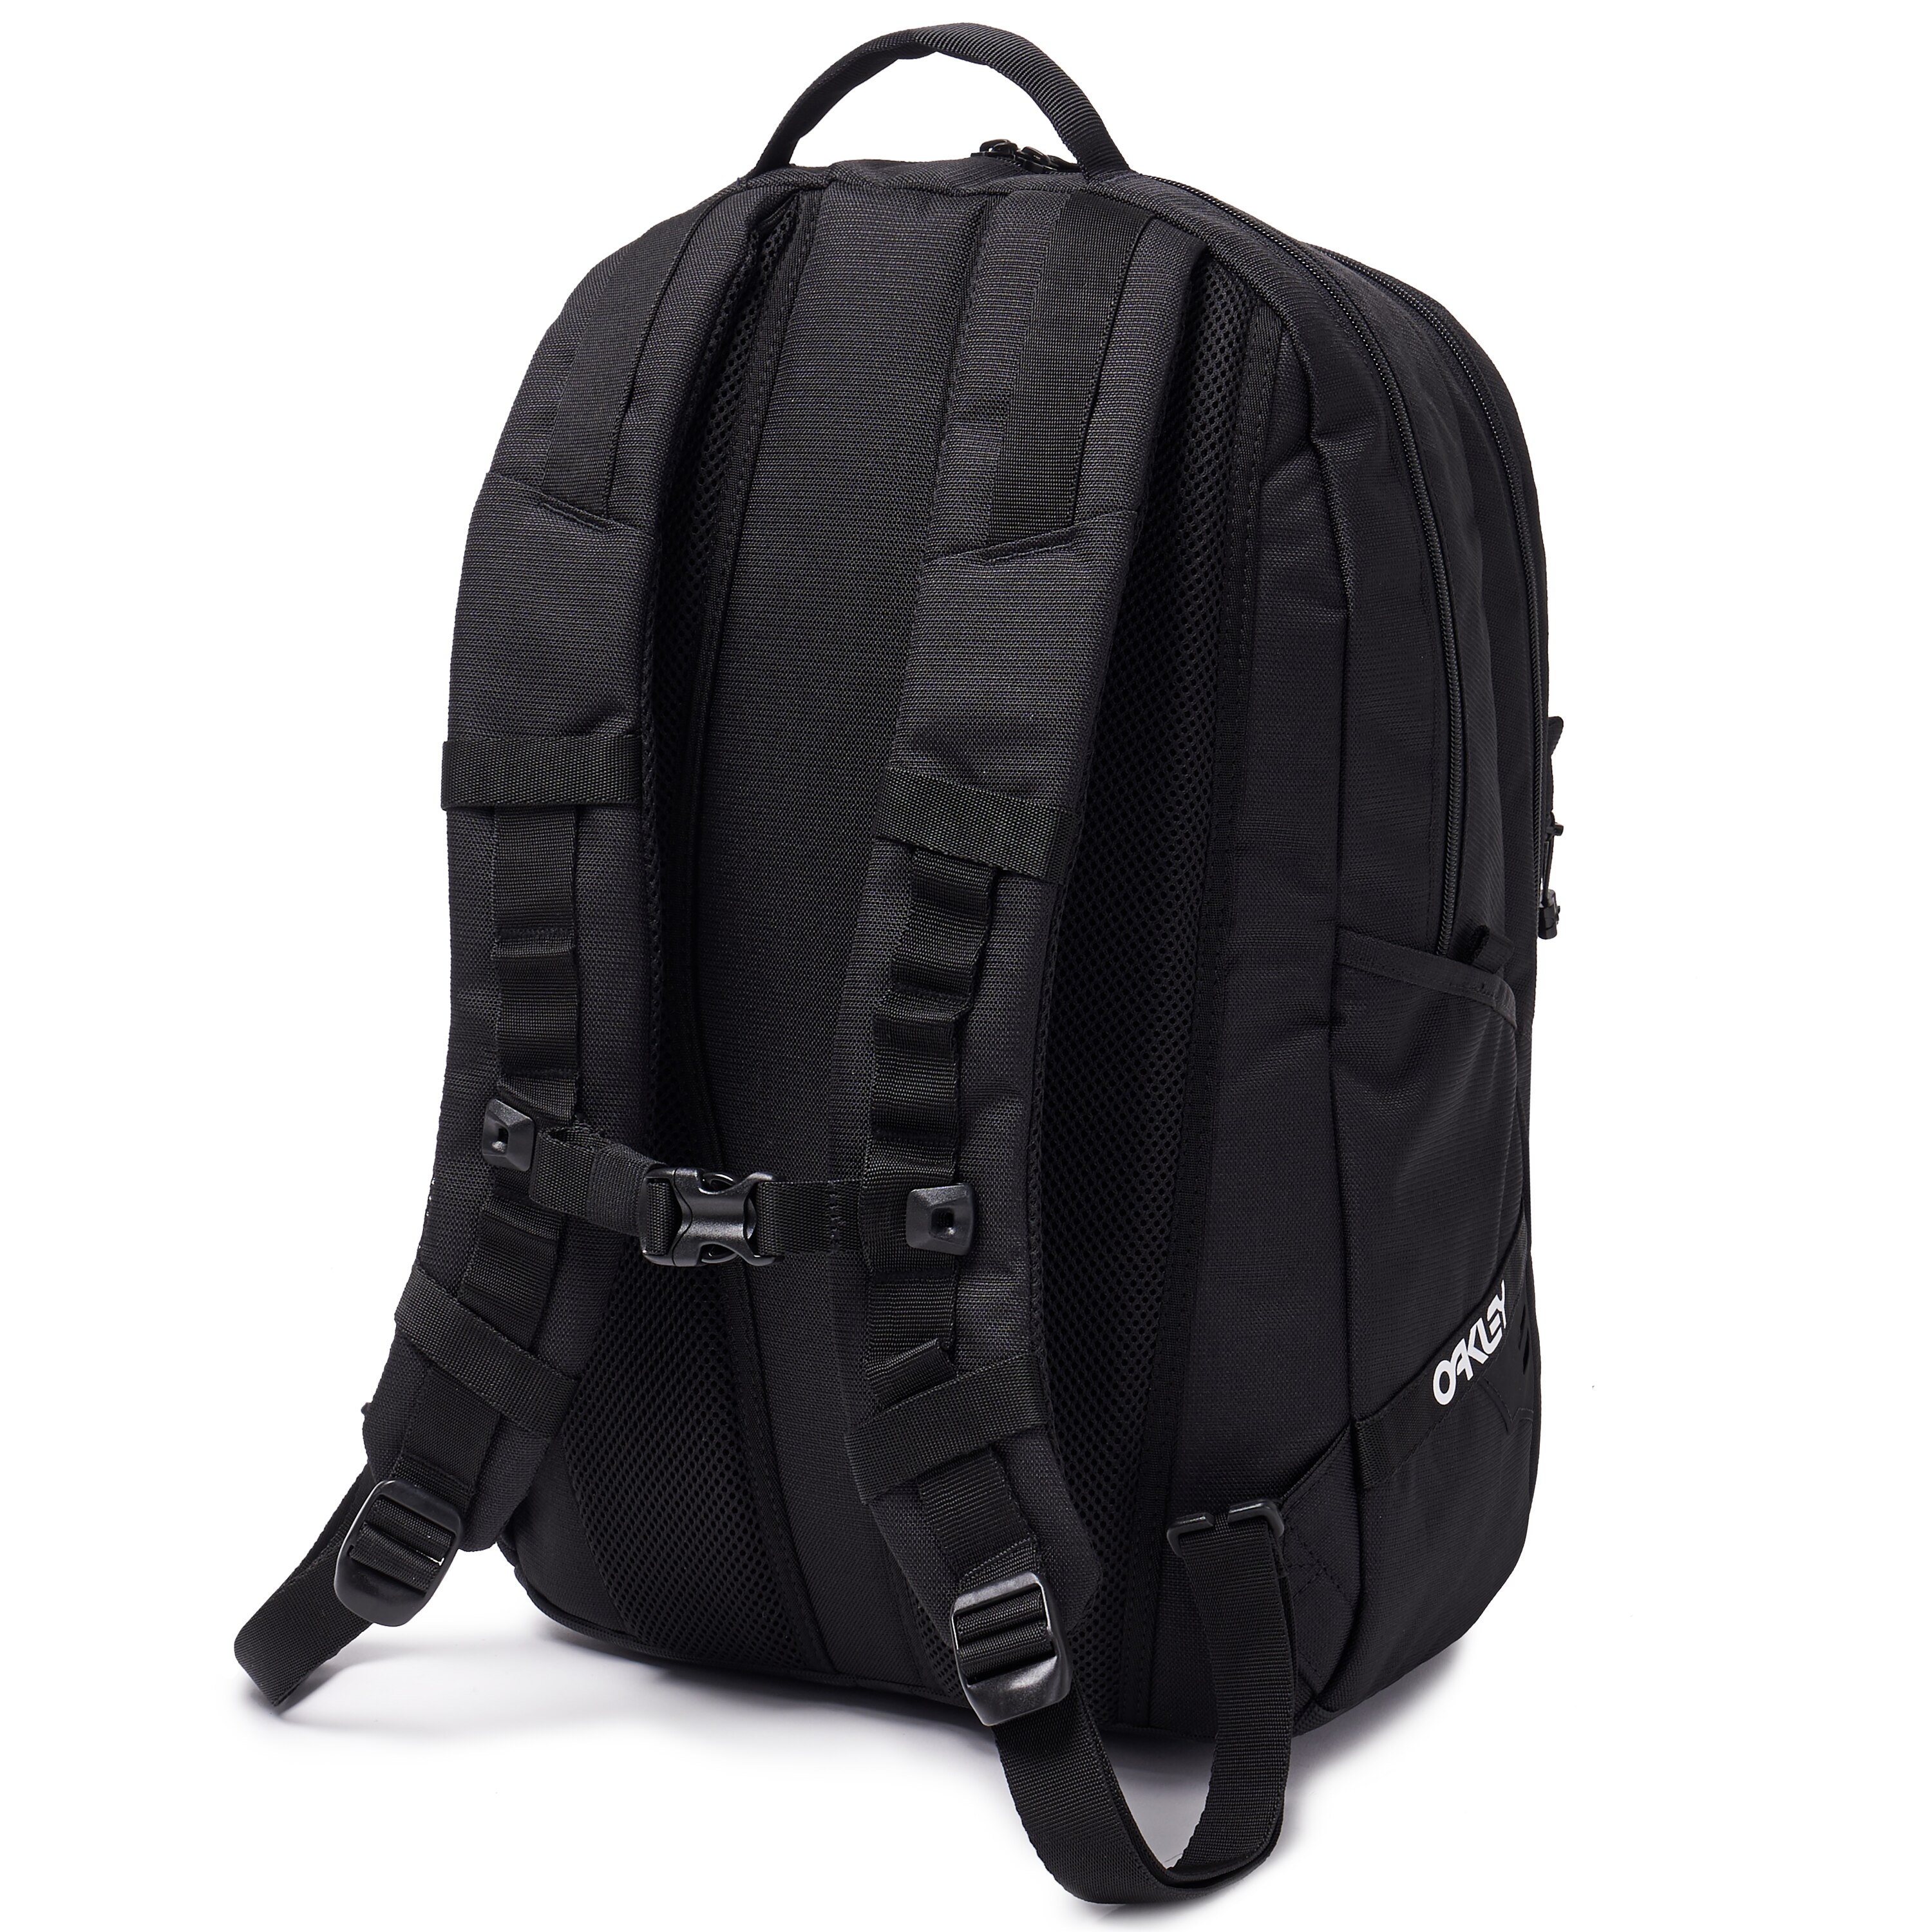 Oakley Street Skate Backpack - Blackout - 921421-02E | Oakley US Store